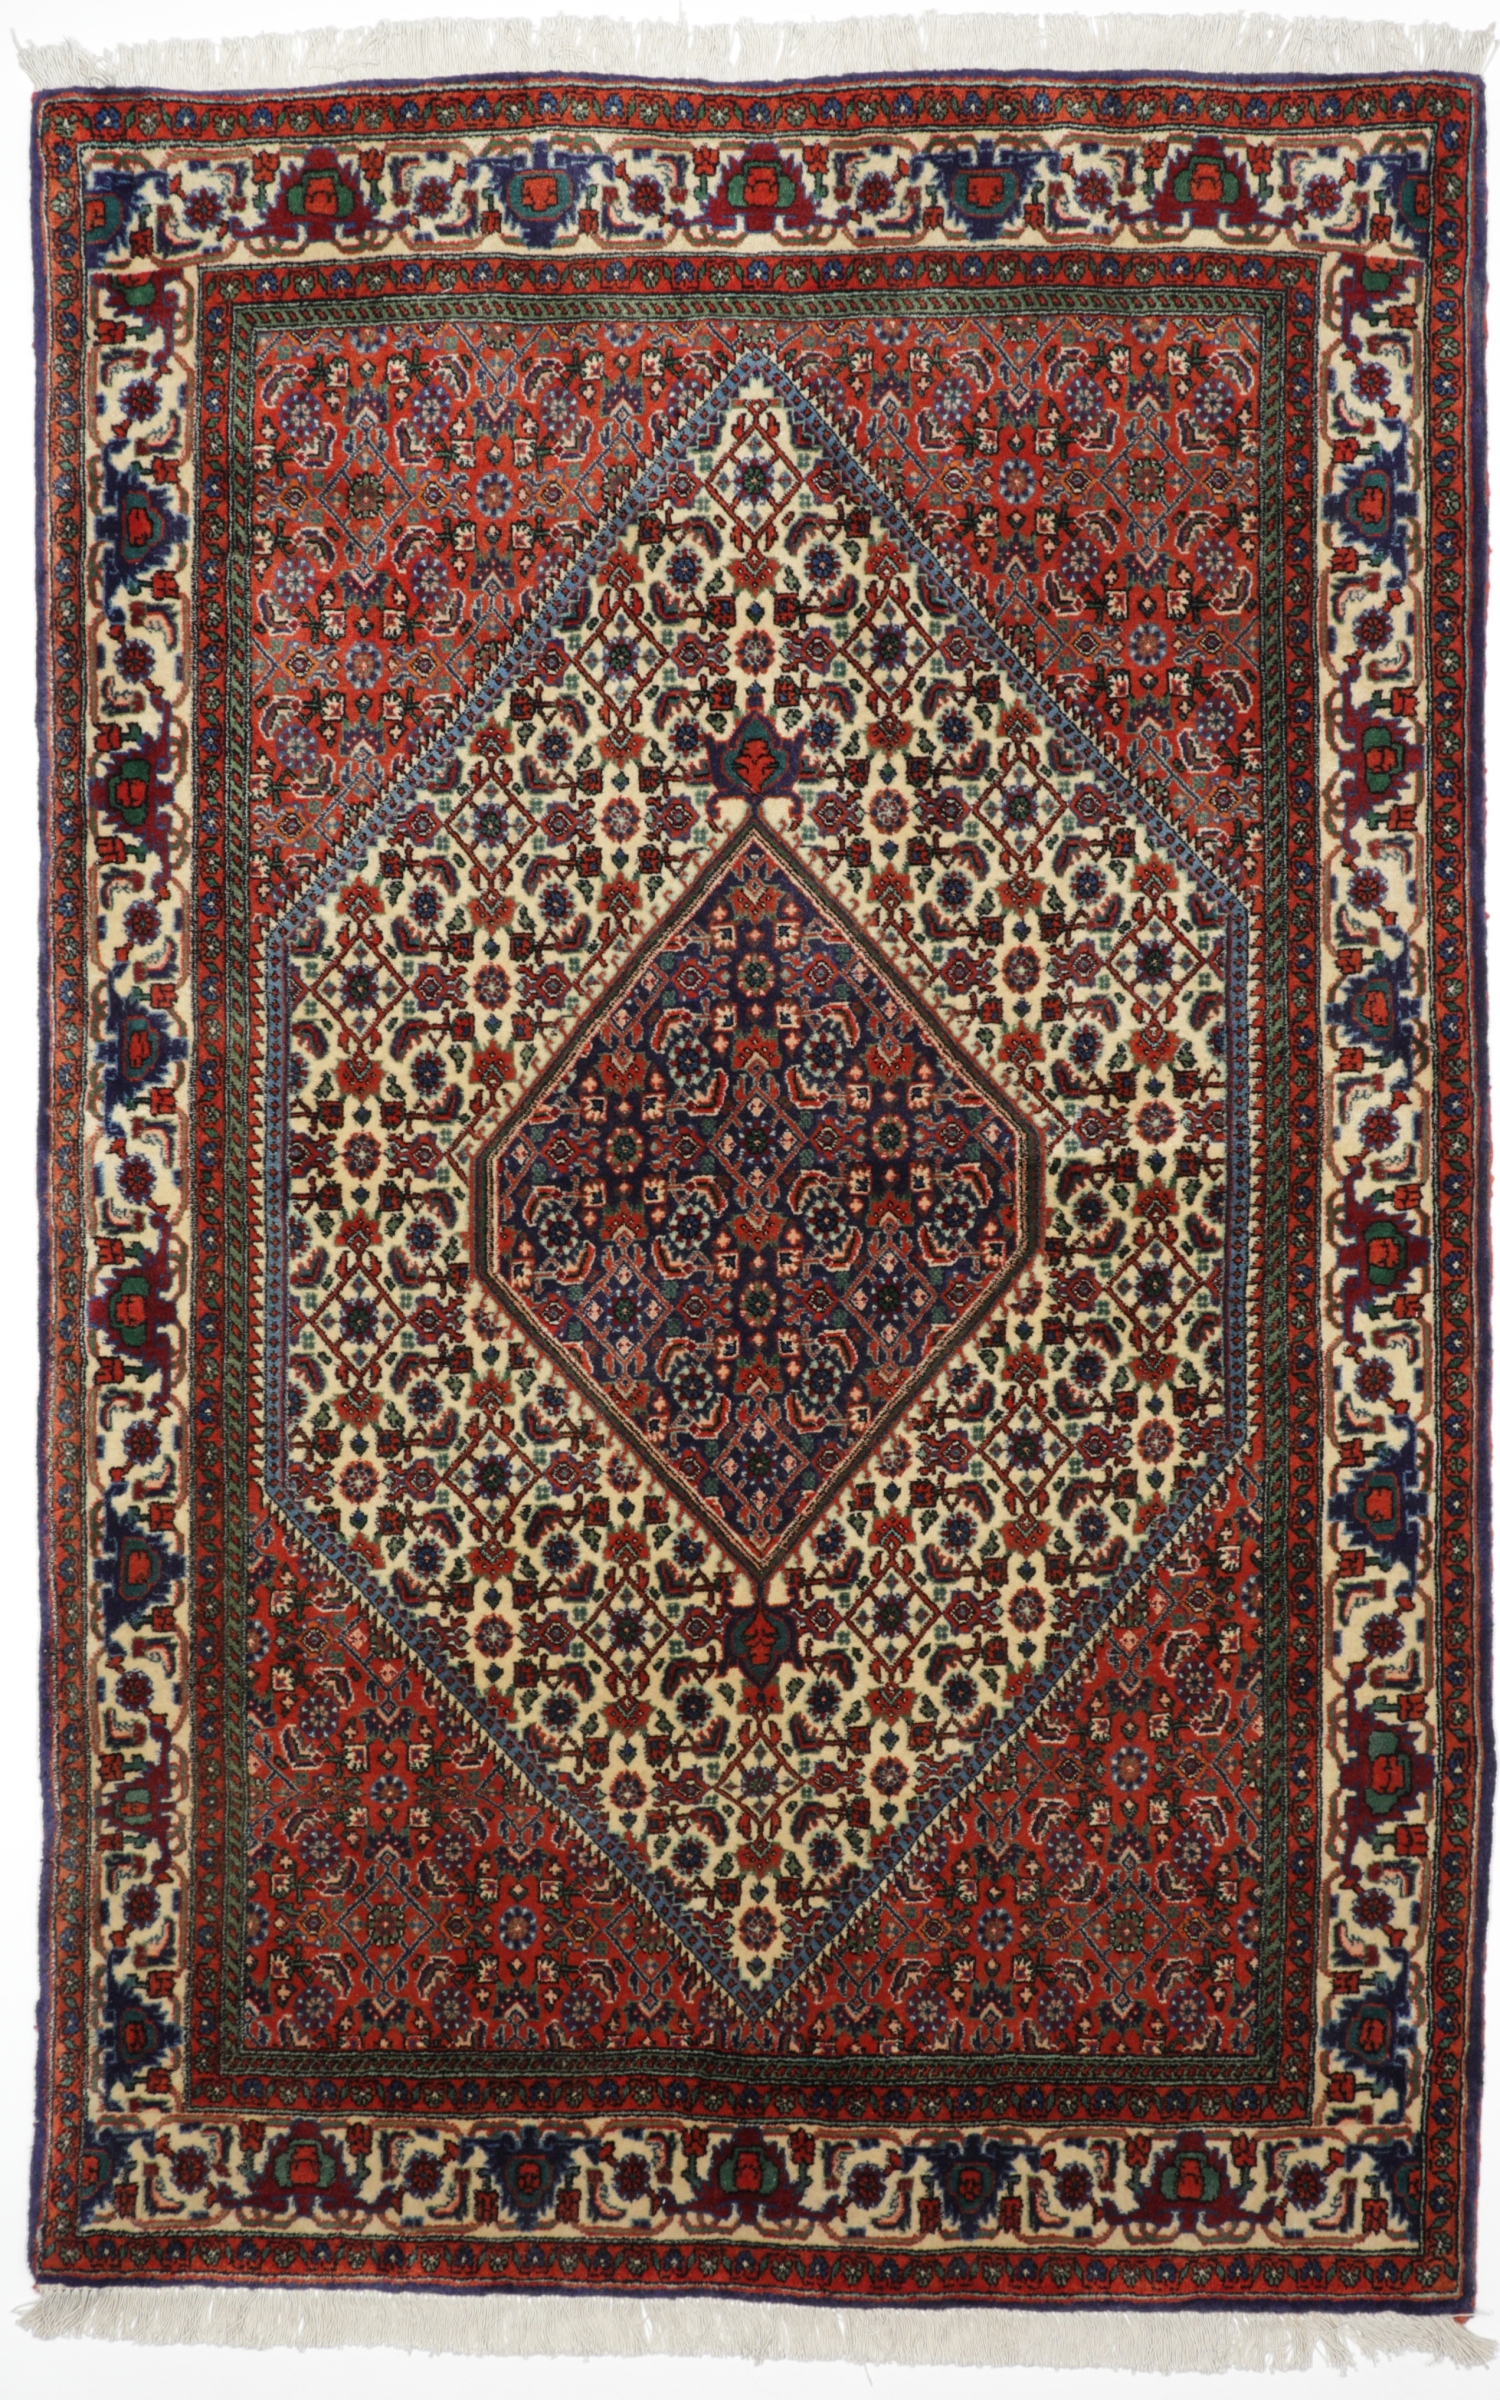 Persischer Bidjar, handgeknüpft, reine Wolle, 111 x 173 cm, Draufsicht